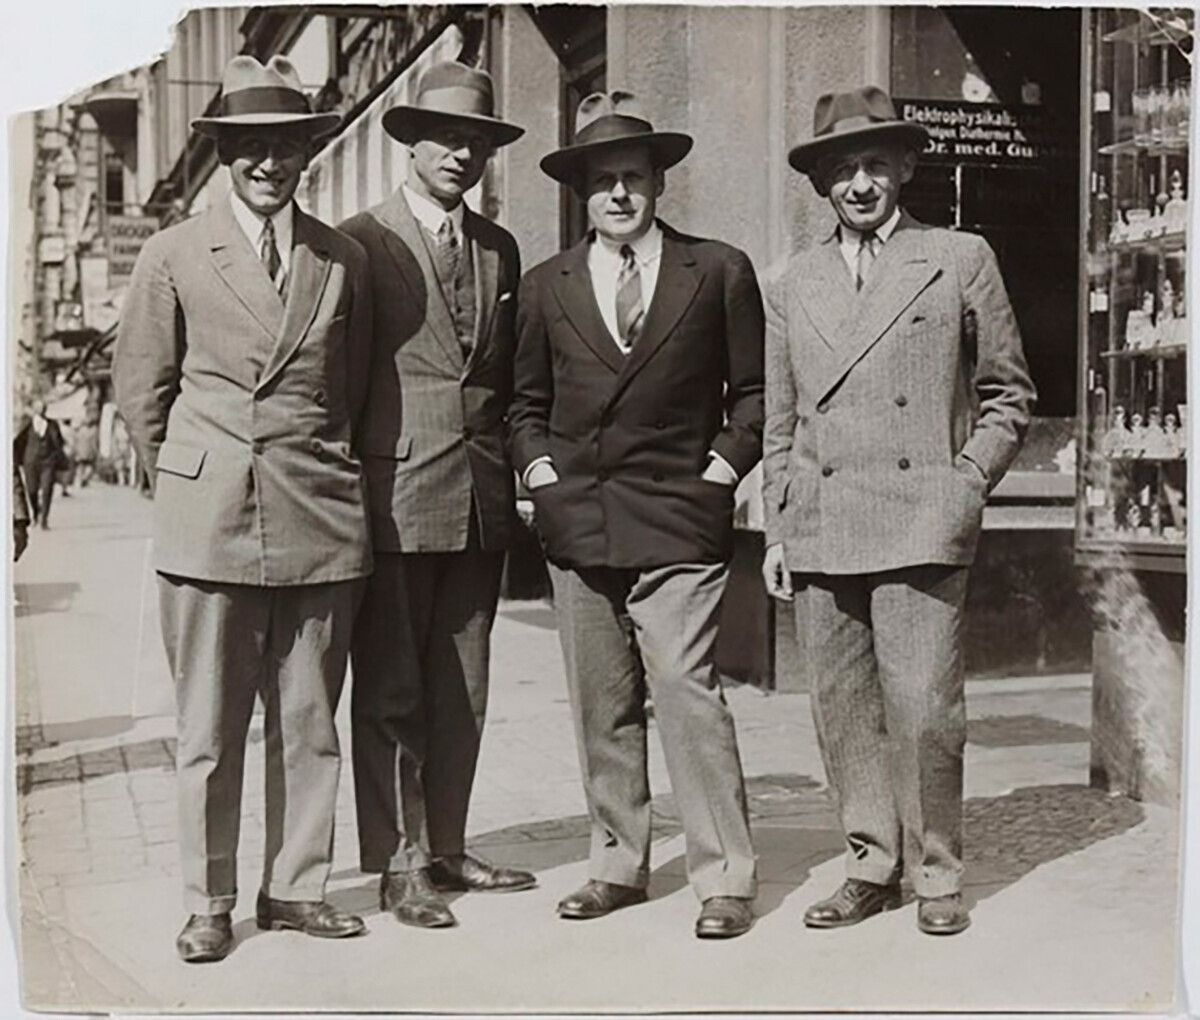 グリゴリー・アレクサンドロフ、エドゥアルド・ティッセ、セルゲイ・エイゼンシュテイン、ユリアン・カウフマン。１９２９年、ベルリンにて